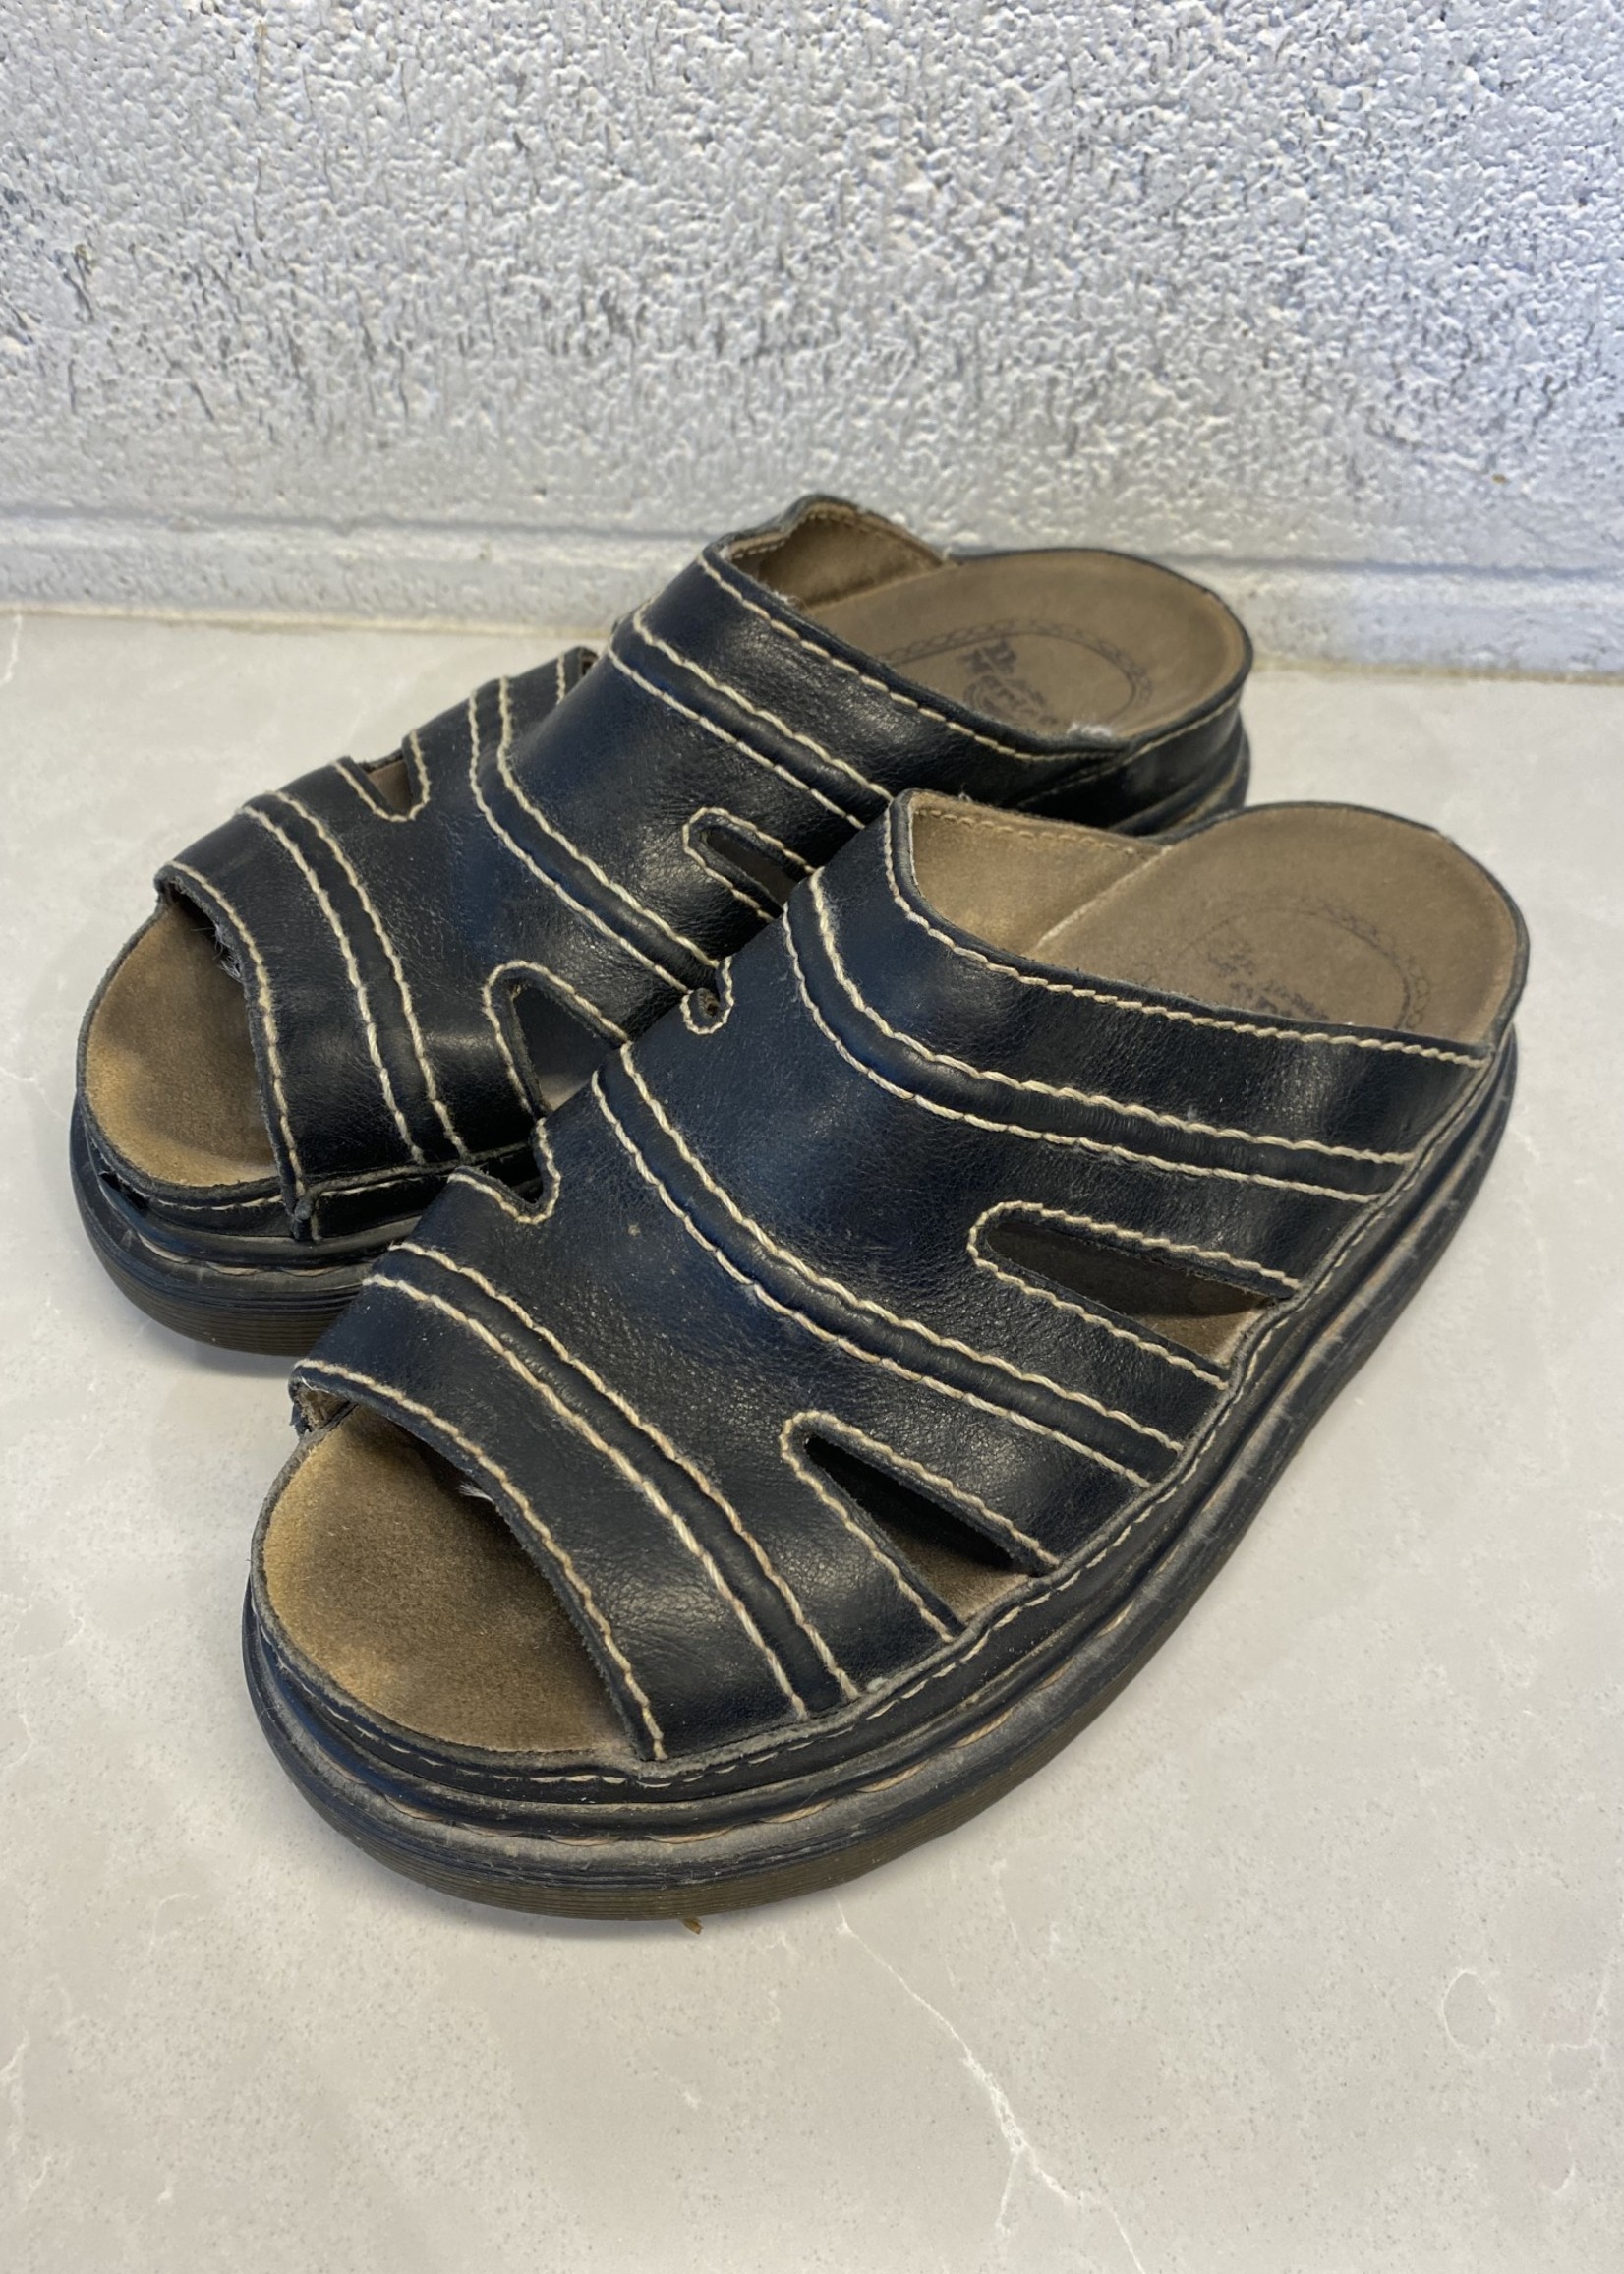 Vintage Dr Marten Strap Sandals 7